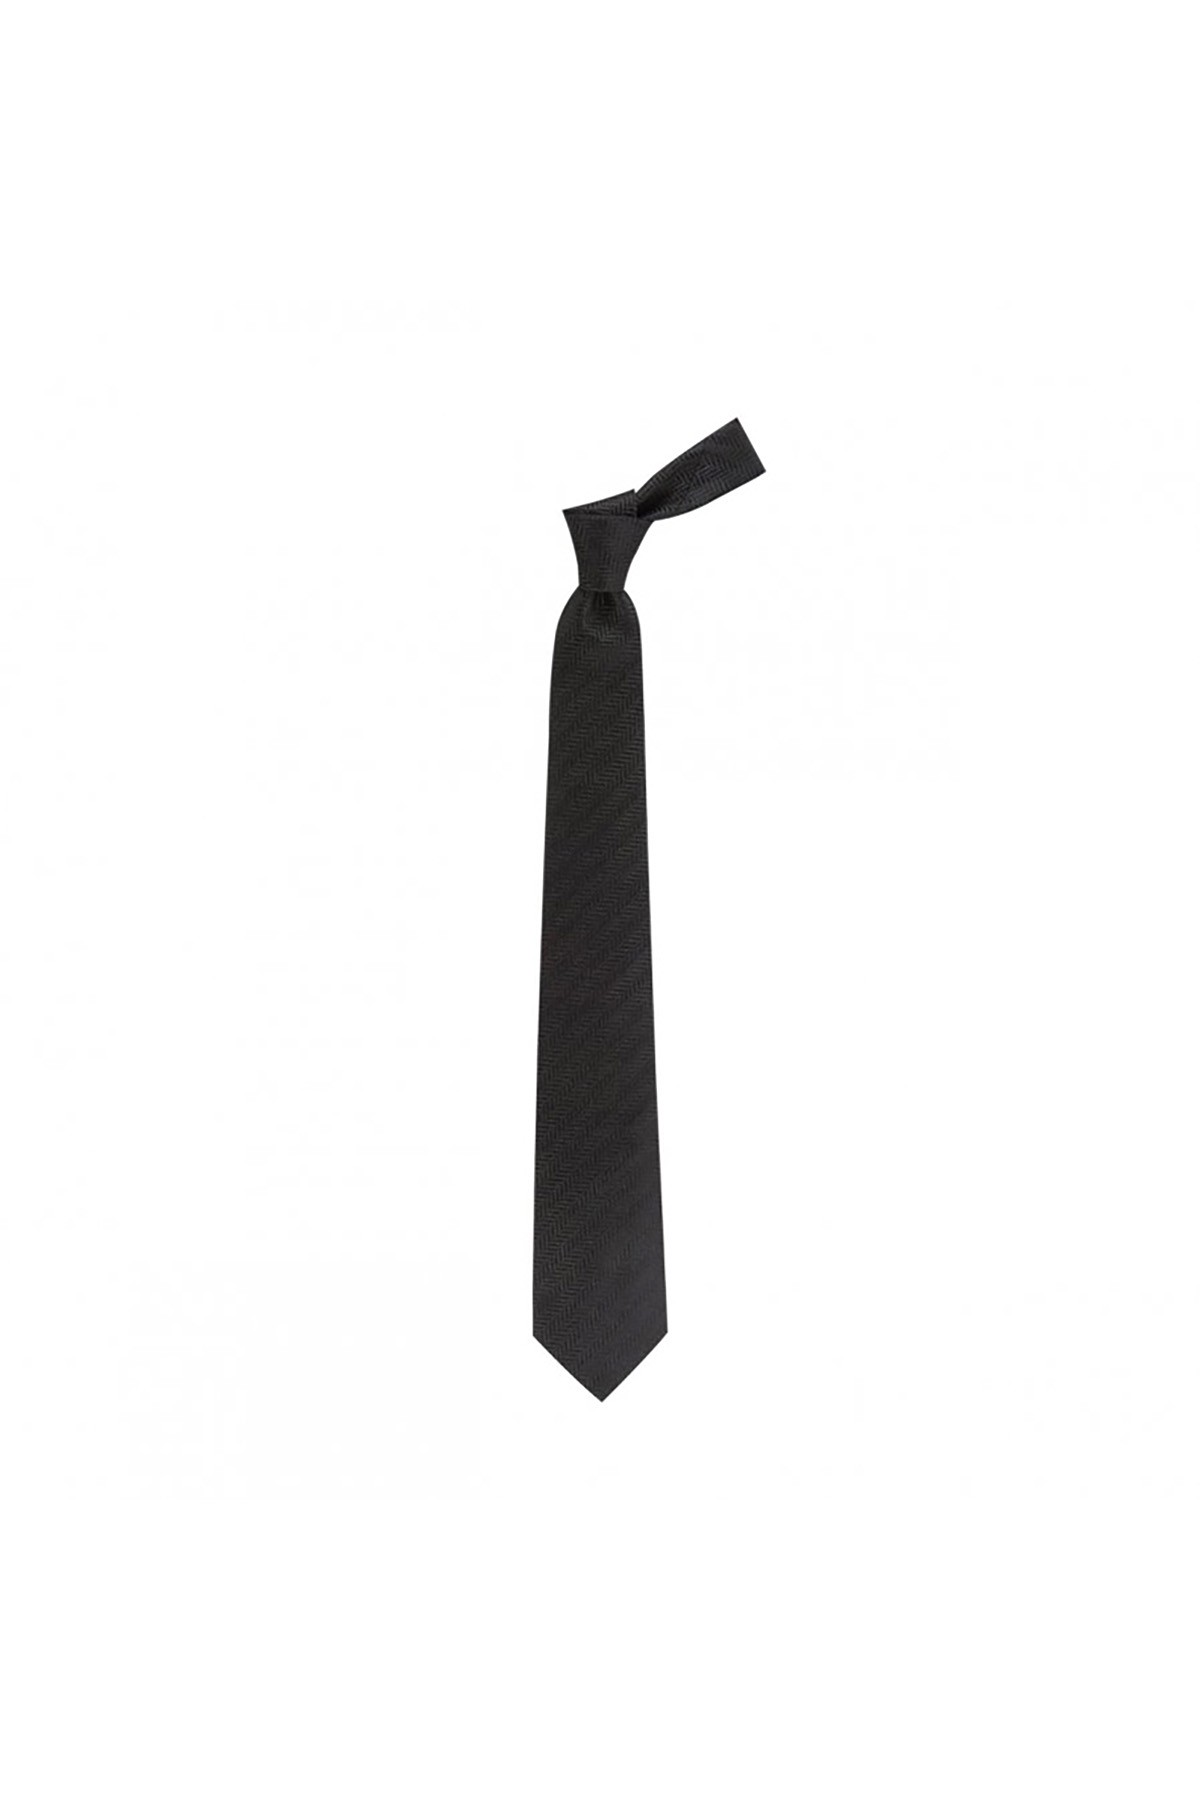 Balıksırtı desenli 8 cm genişliğinde yün ipek karışımlı kravat - Siyah